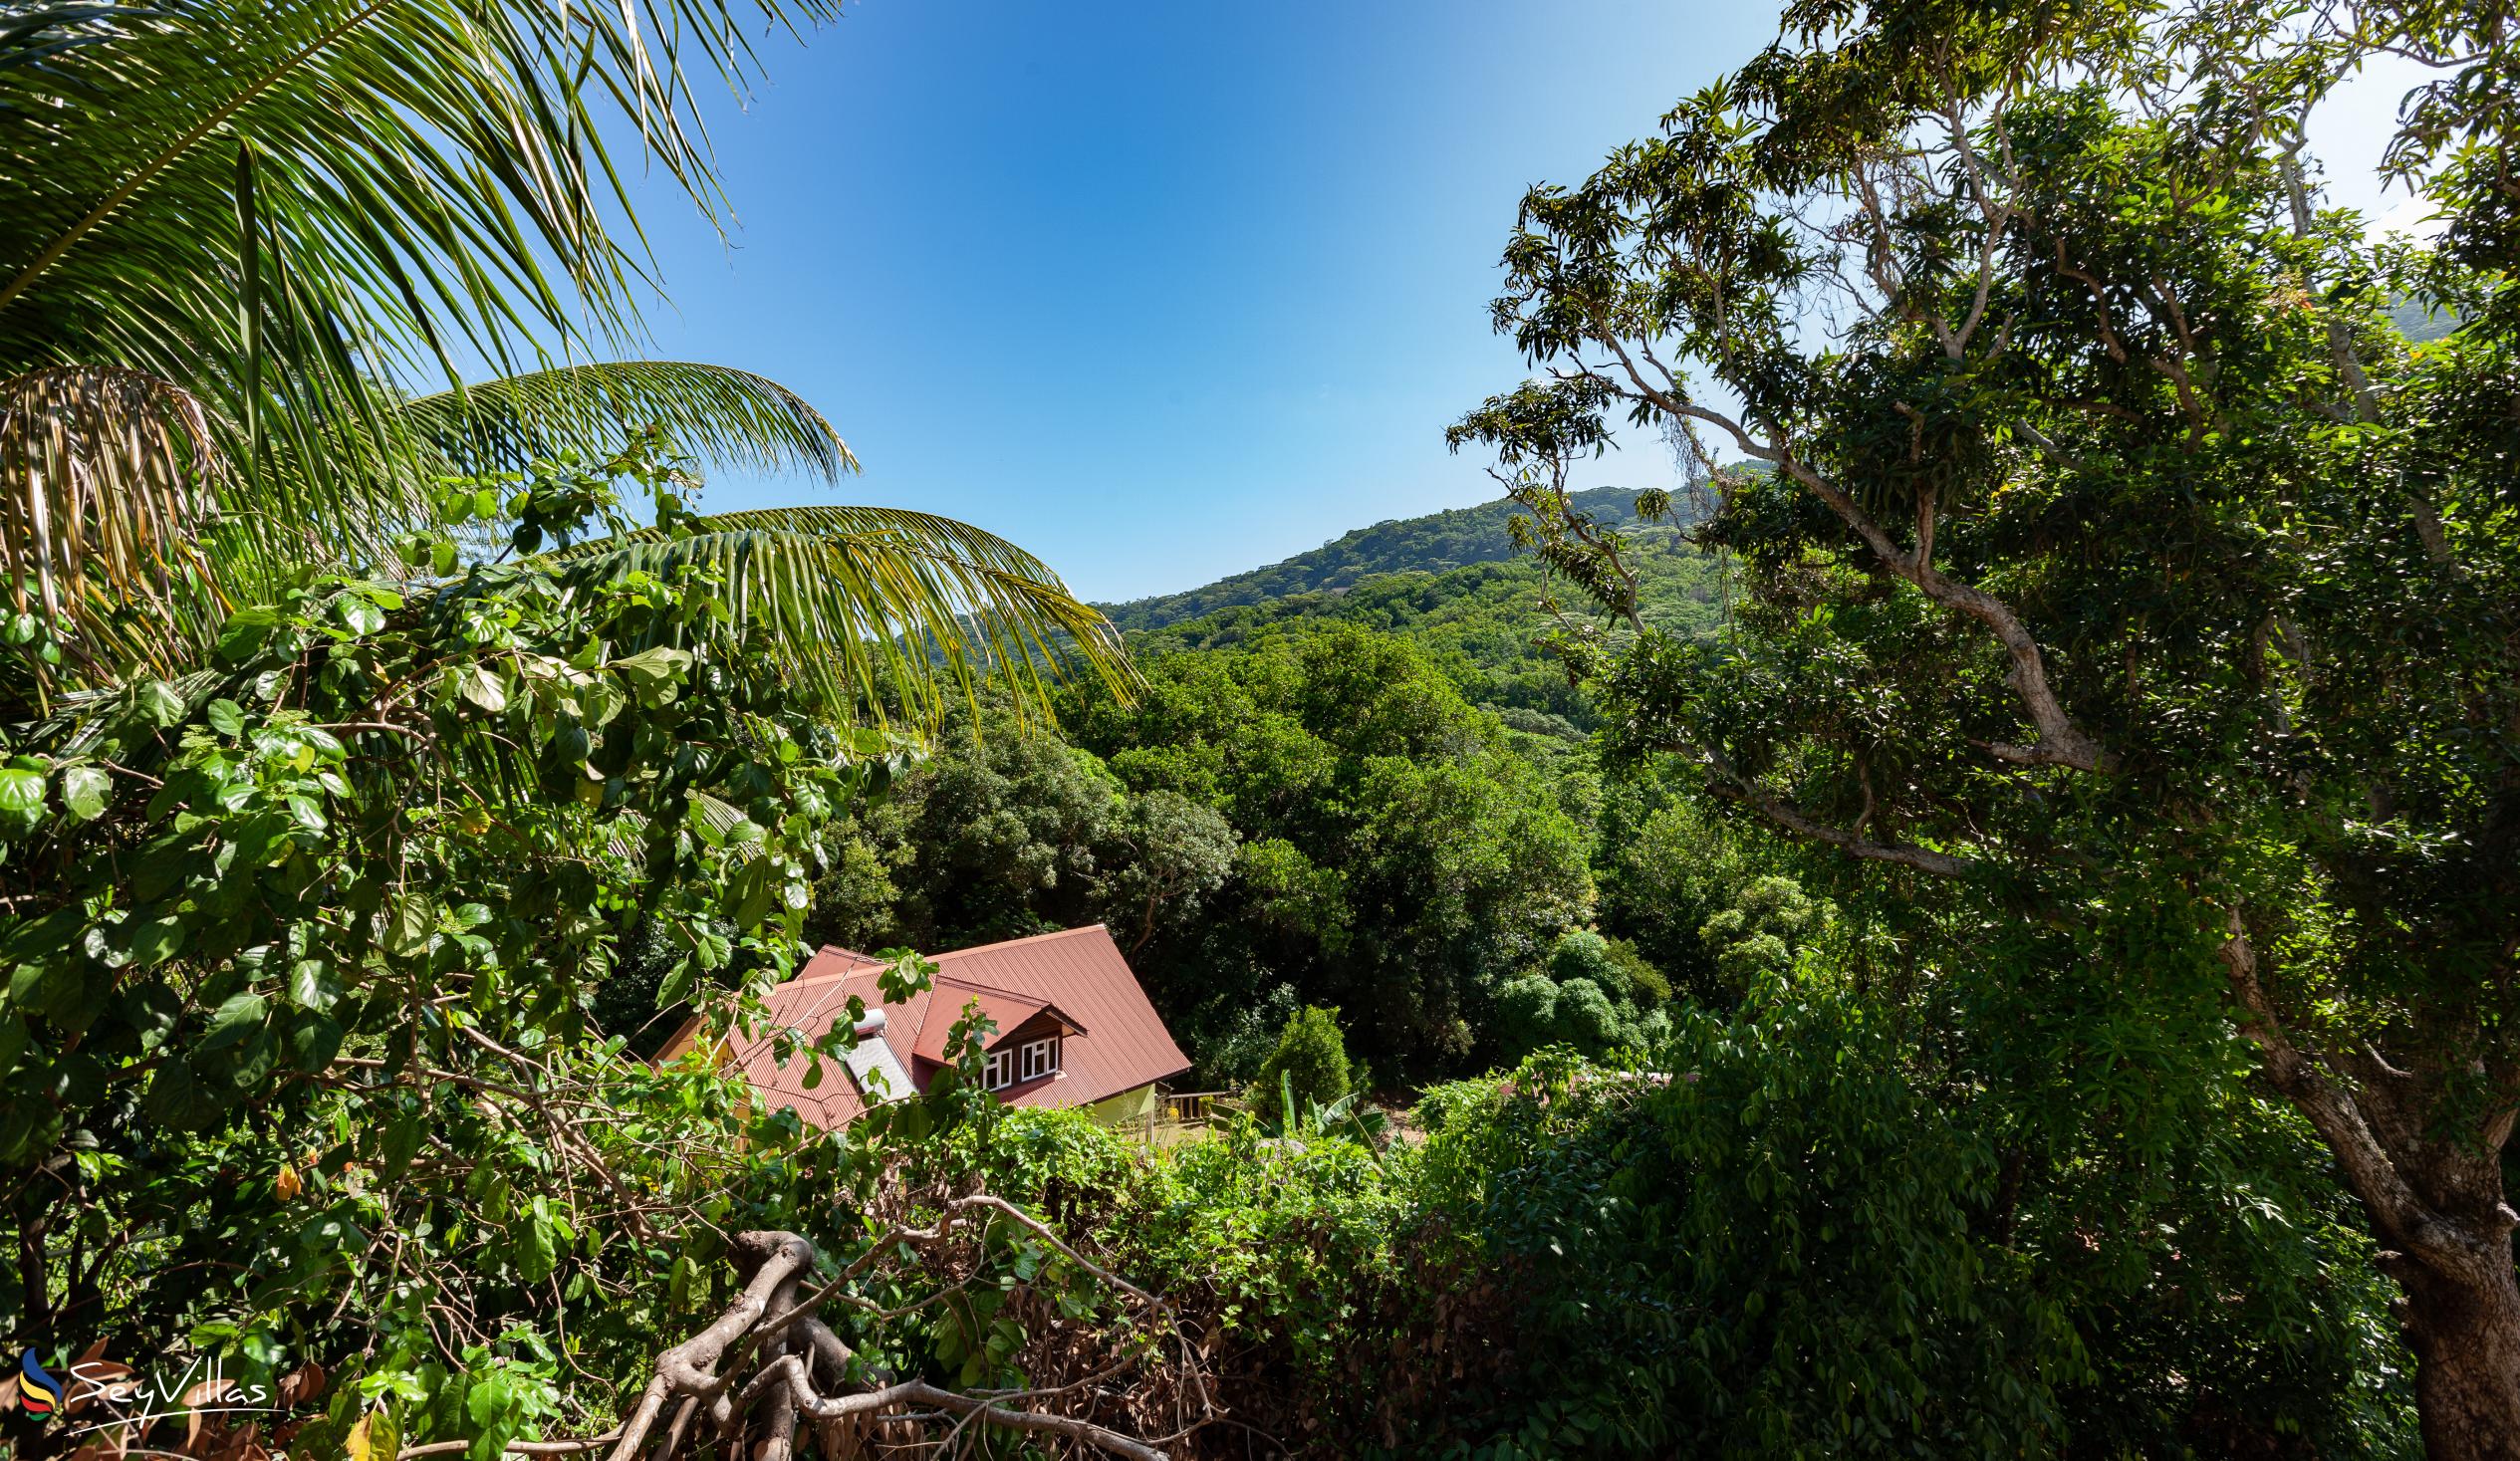 Foto 20: Mountain View Hotel - Posizione - La Digue (Seychelles)